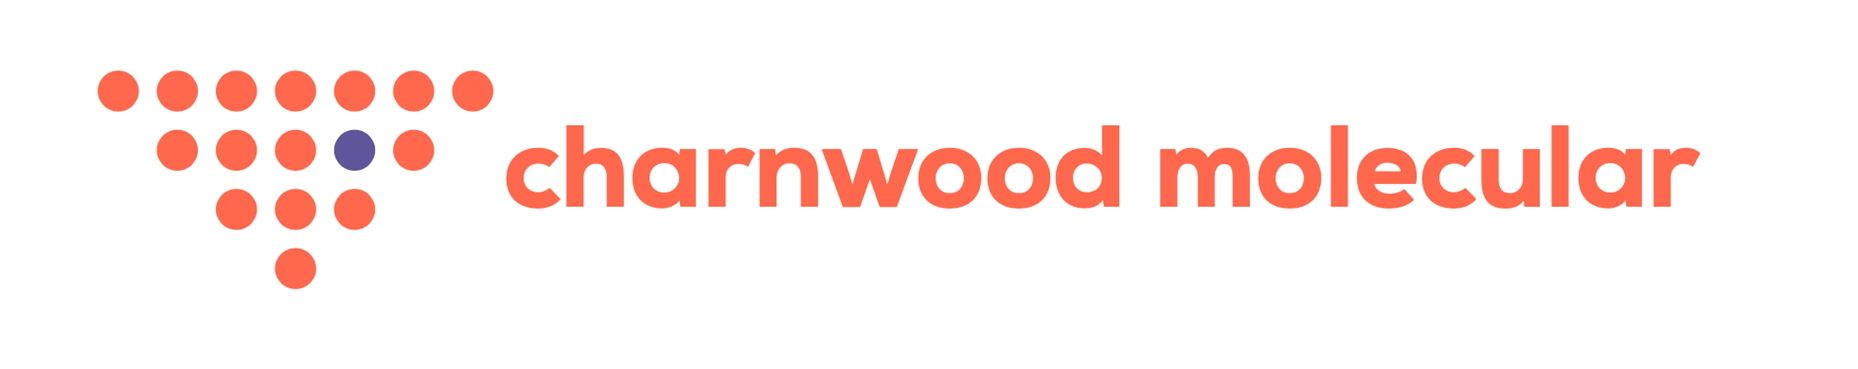 charnwood Logo